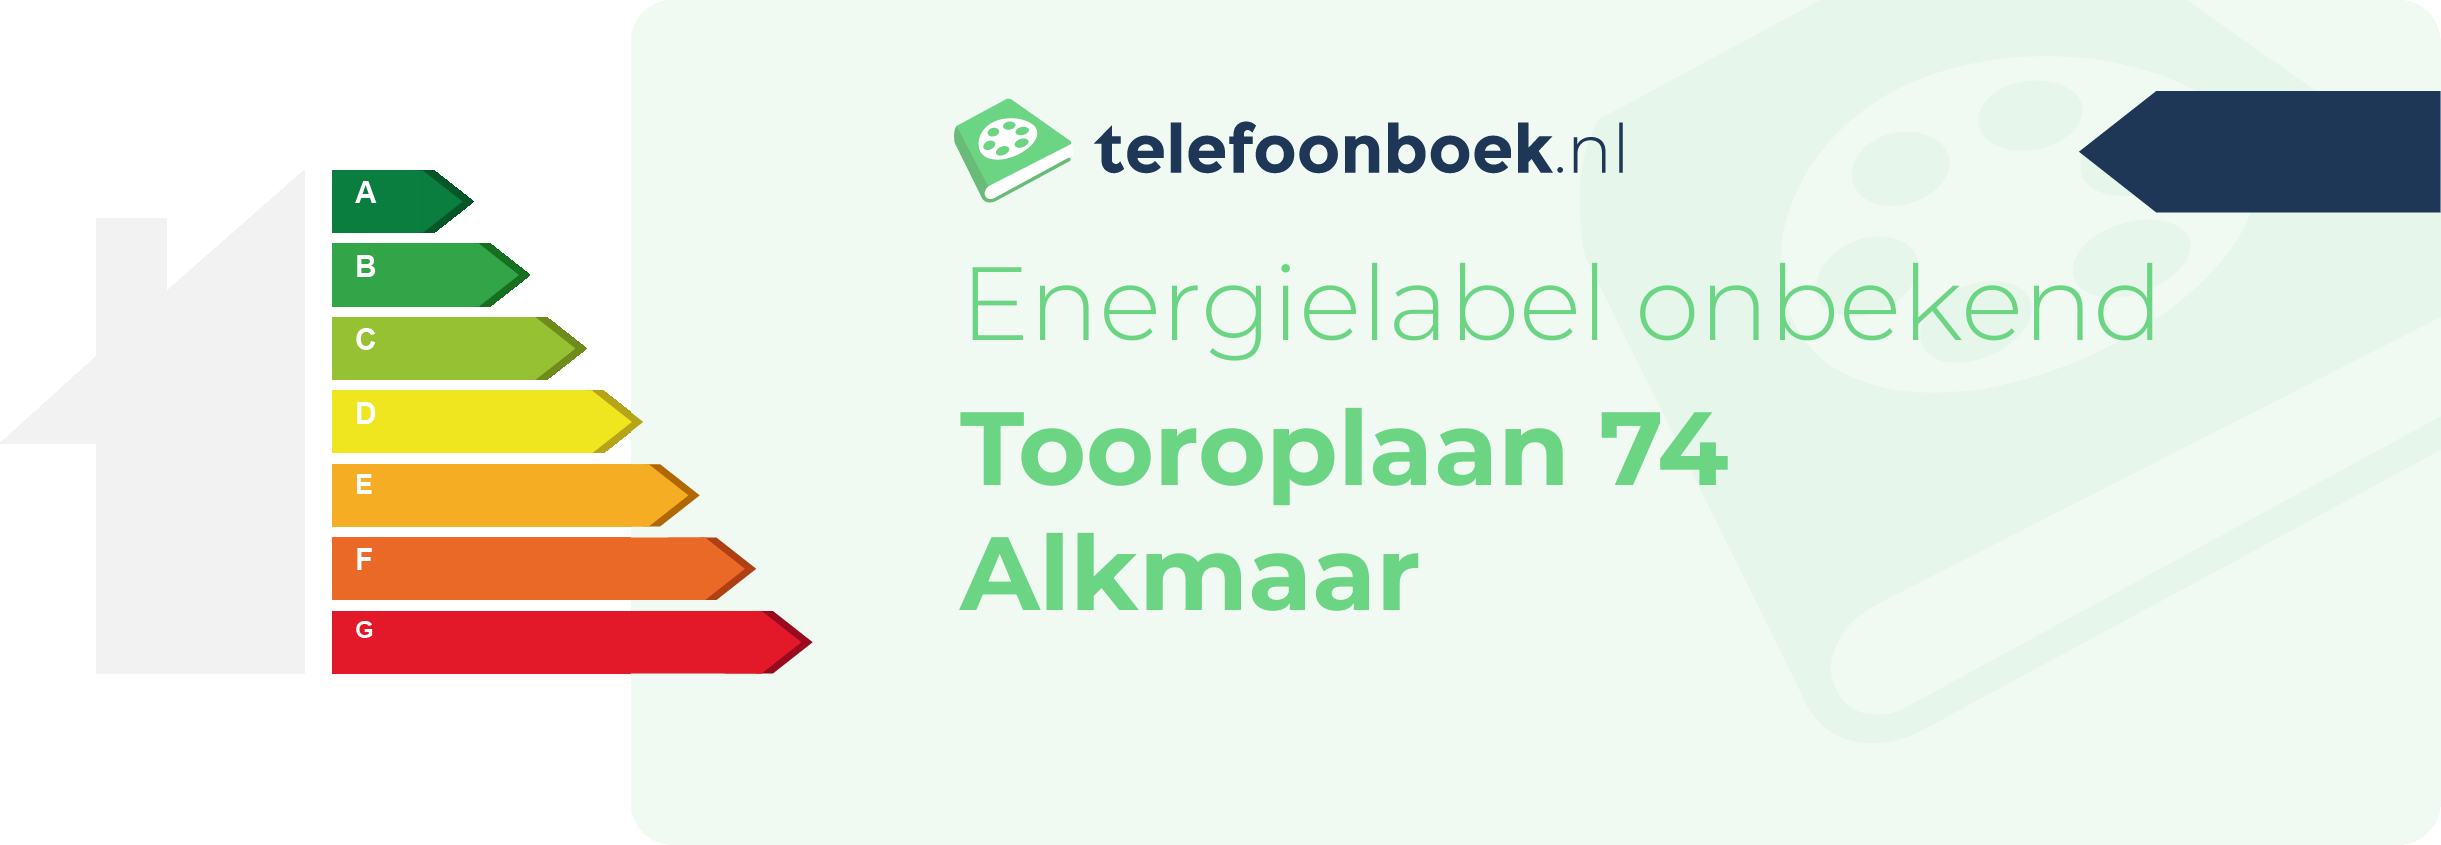 Energielabel Tooroplaan 74 Alkmaar